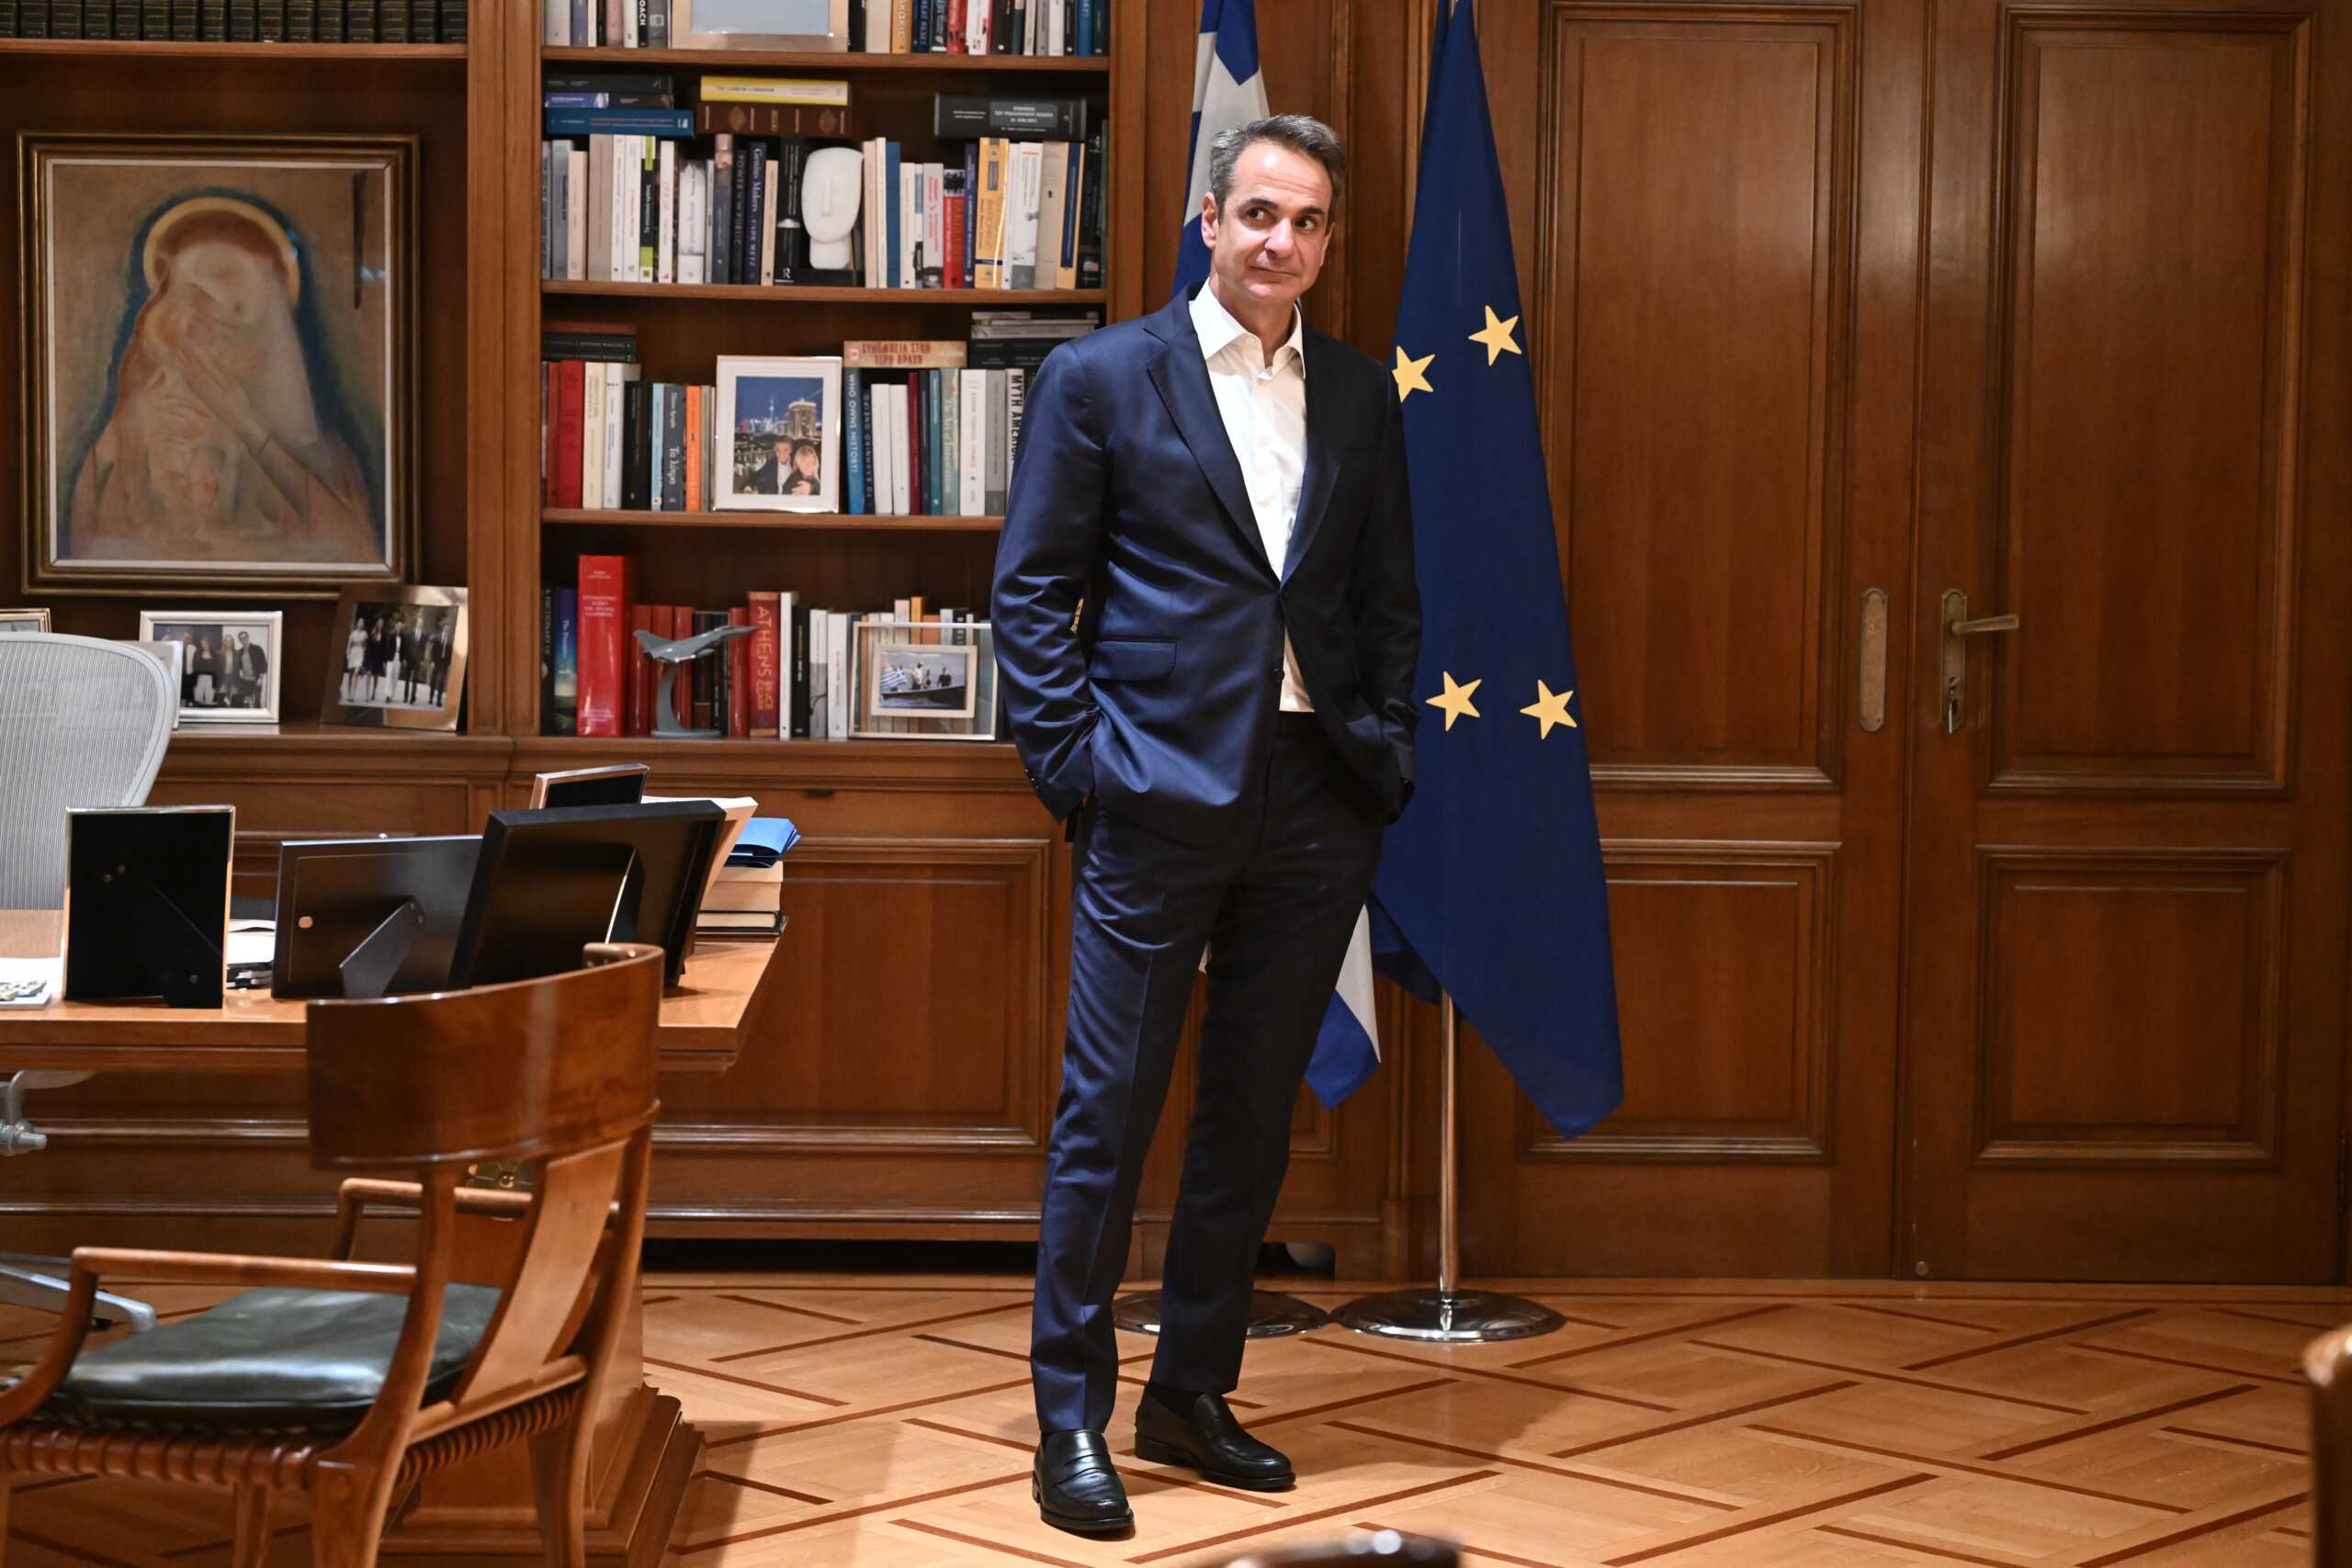 Μητσοτάκης στο Politico: Η Ελλάδα θέλει ένα σημαντικό χαρτοφυλάκιο στην Κομισιόν